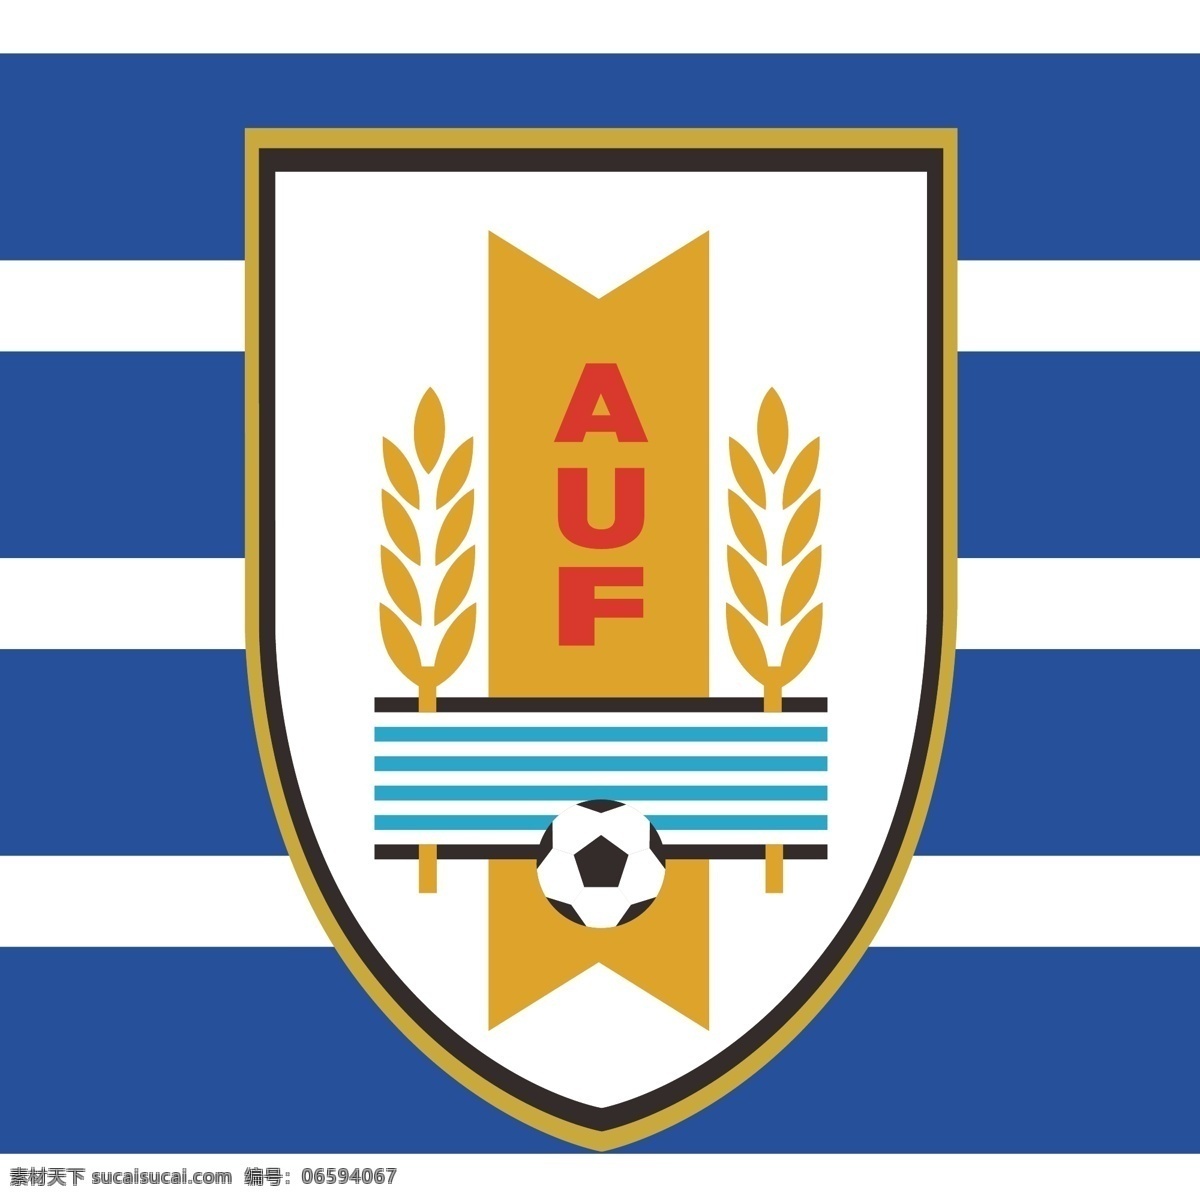 乌拉圭队标志 乌拉圭 南美 世界杯 足球 运动 南美洲 超级德比 足球标志 logo设计